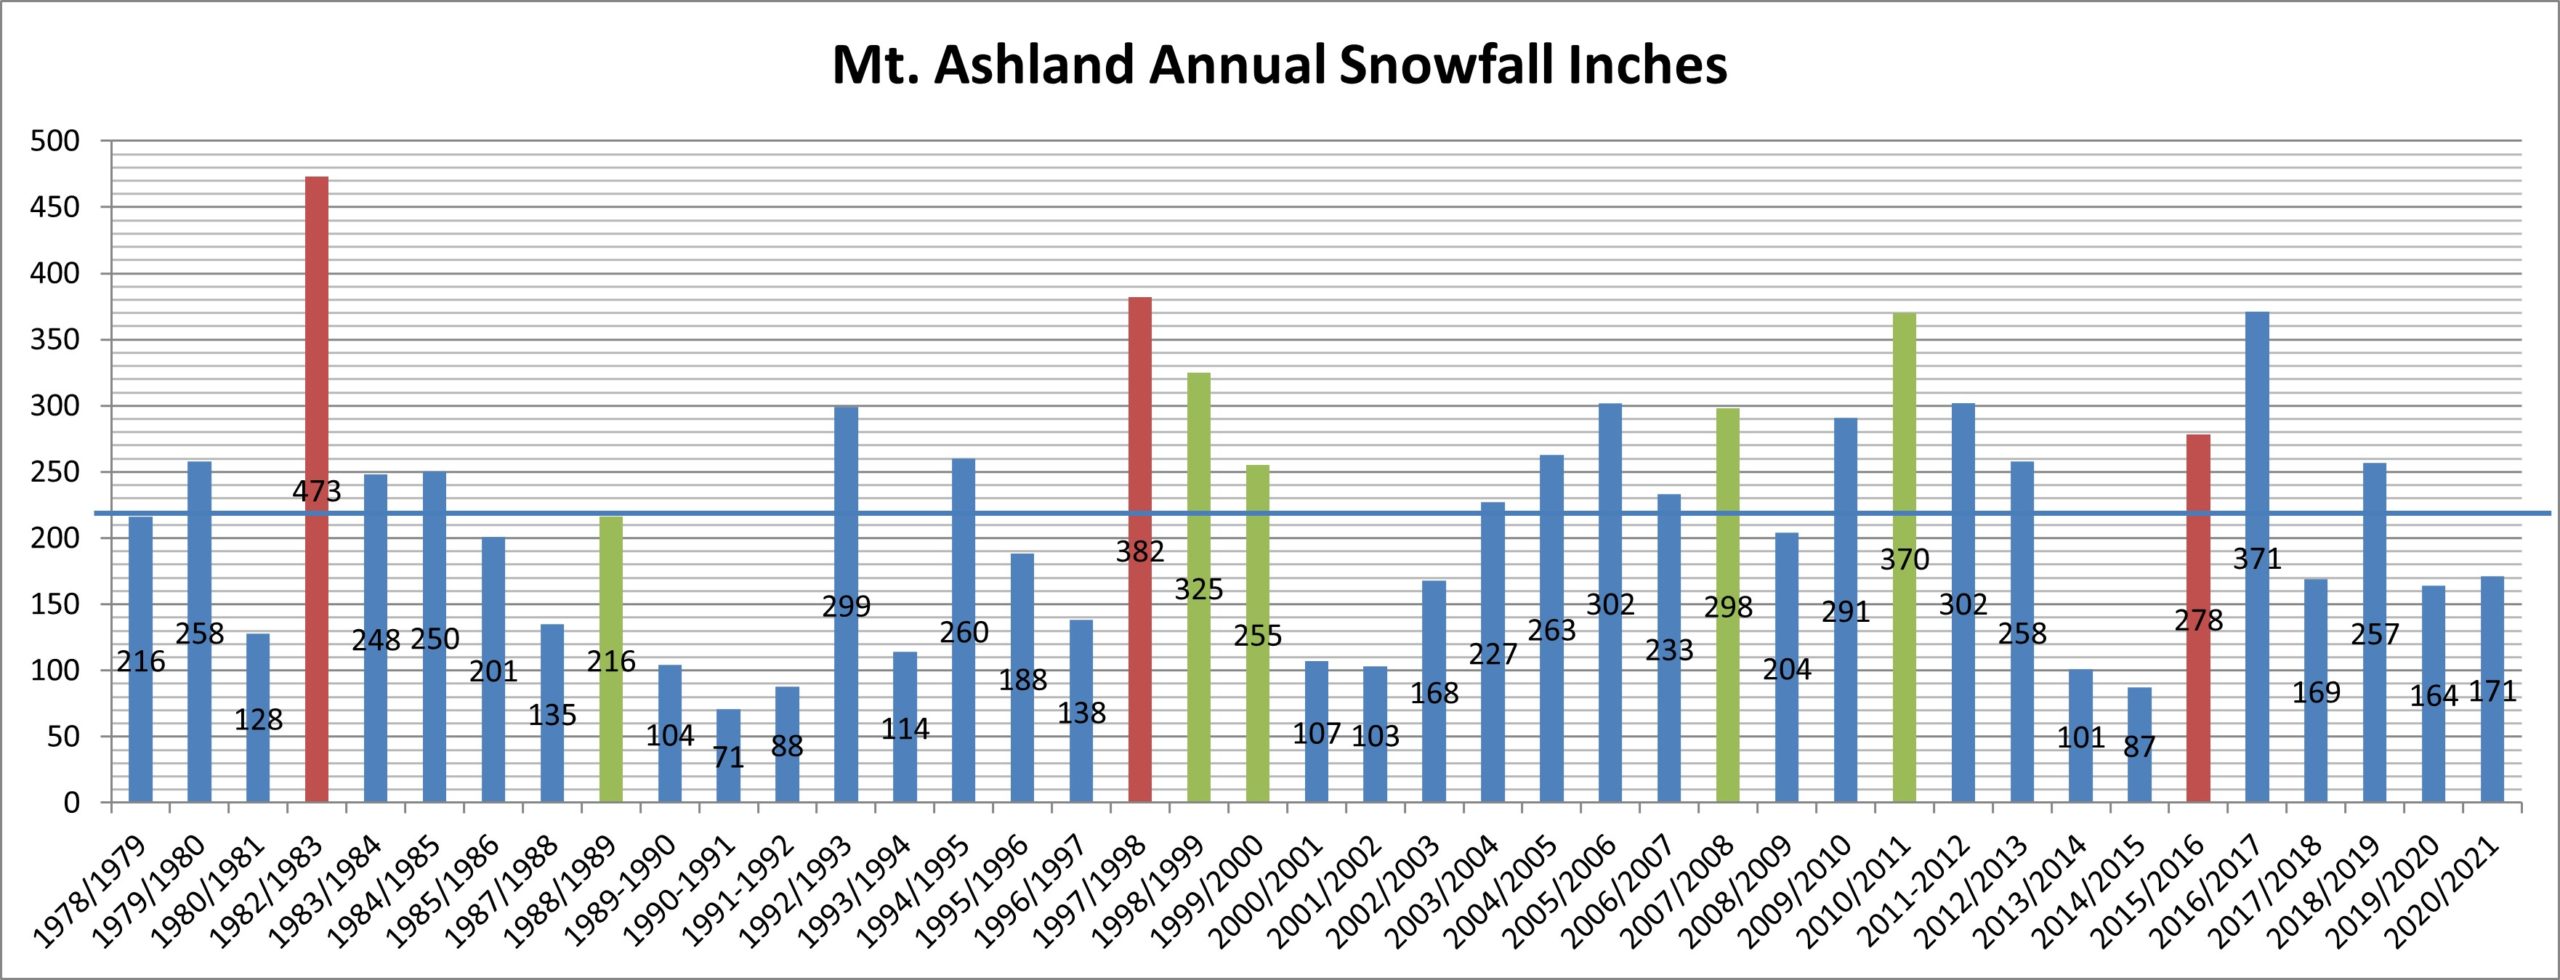 Snowfall at Mt. Ashland through 2020